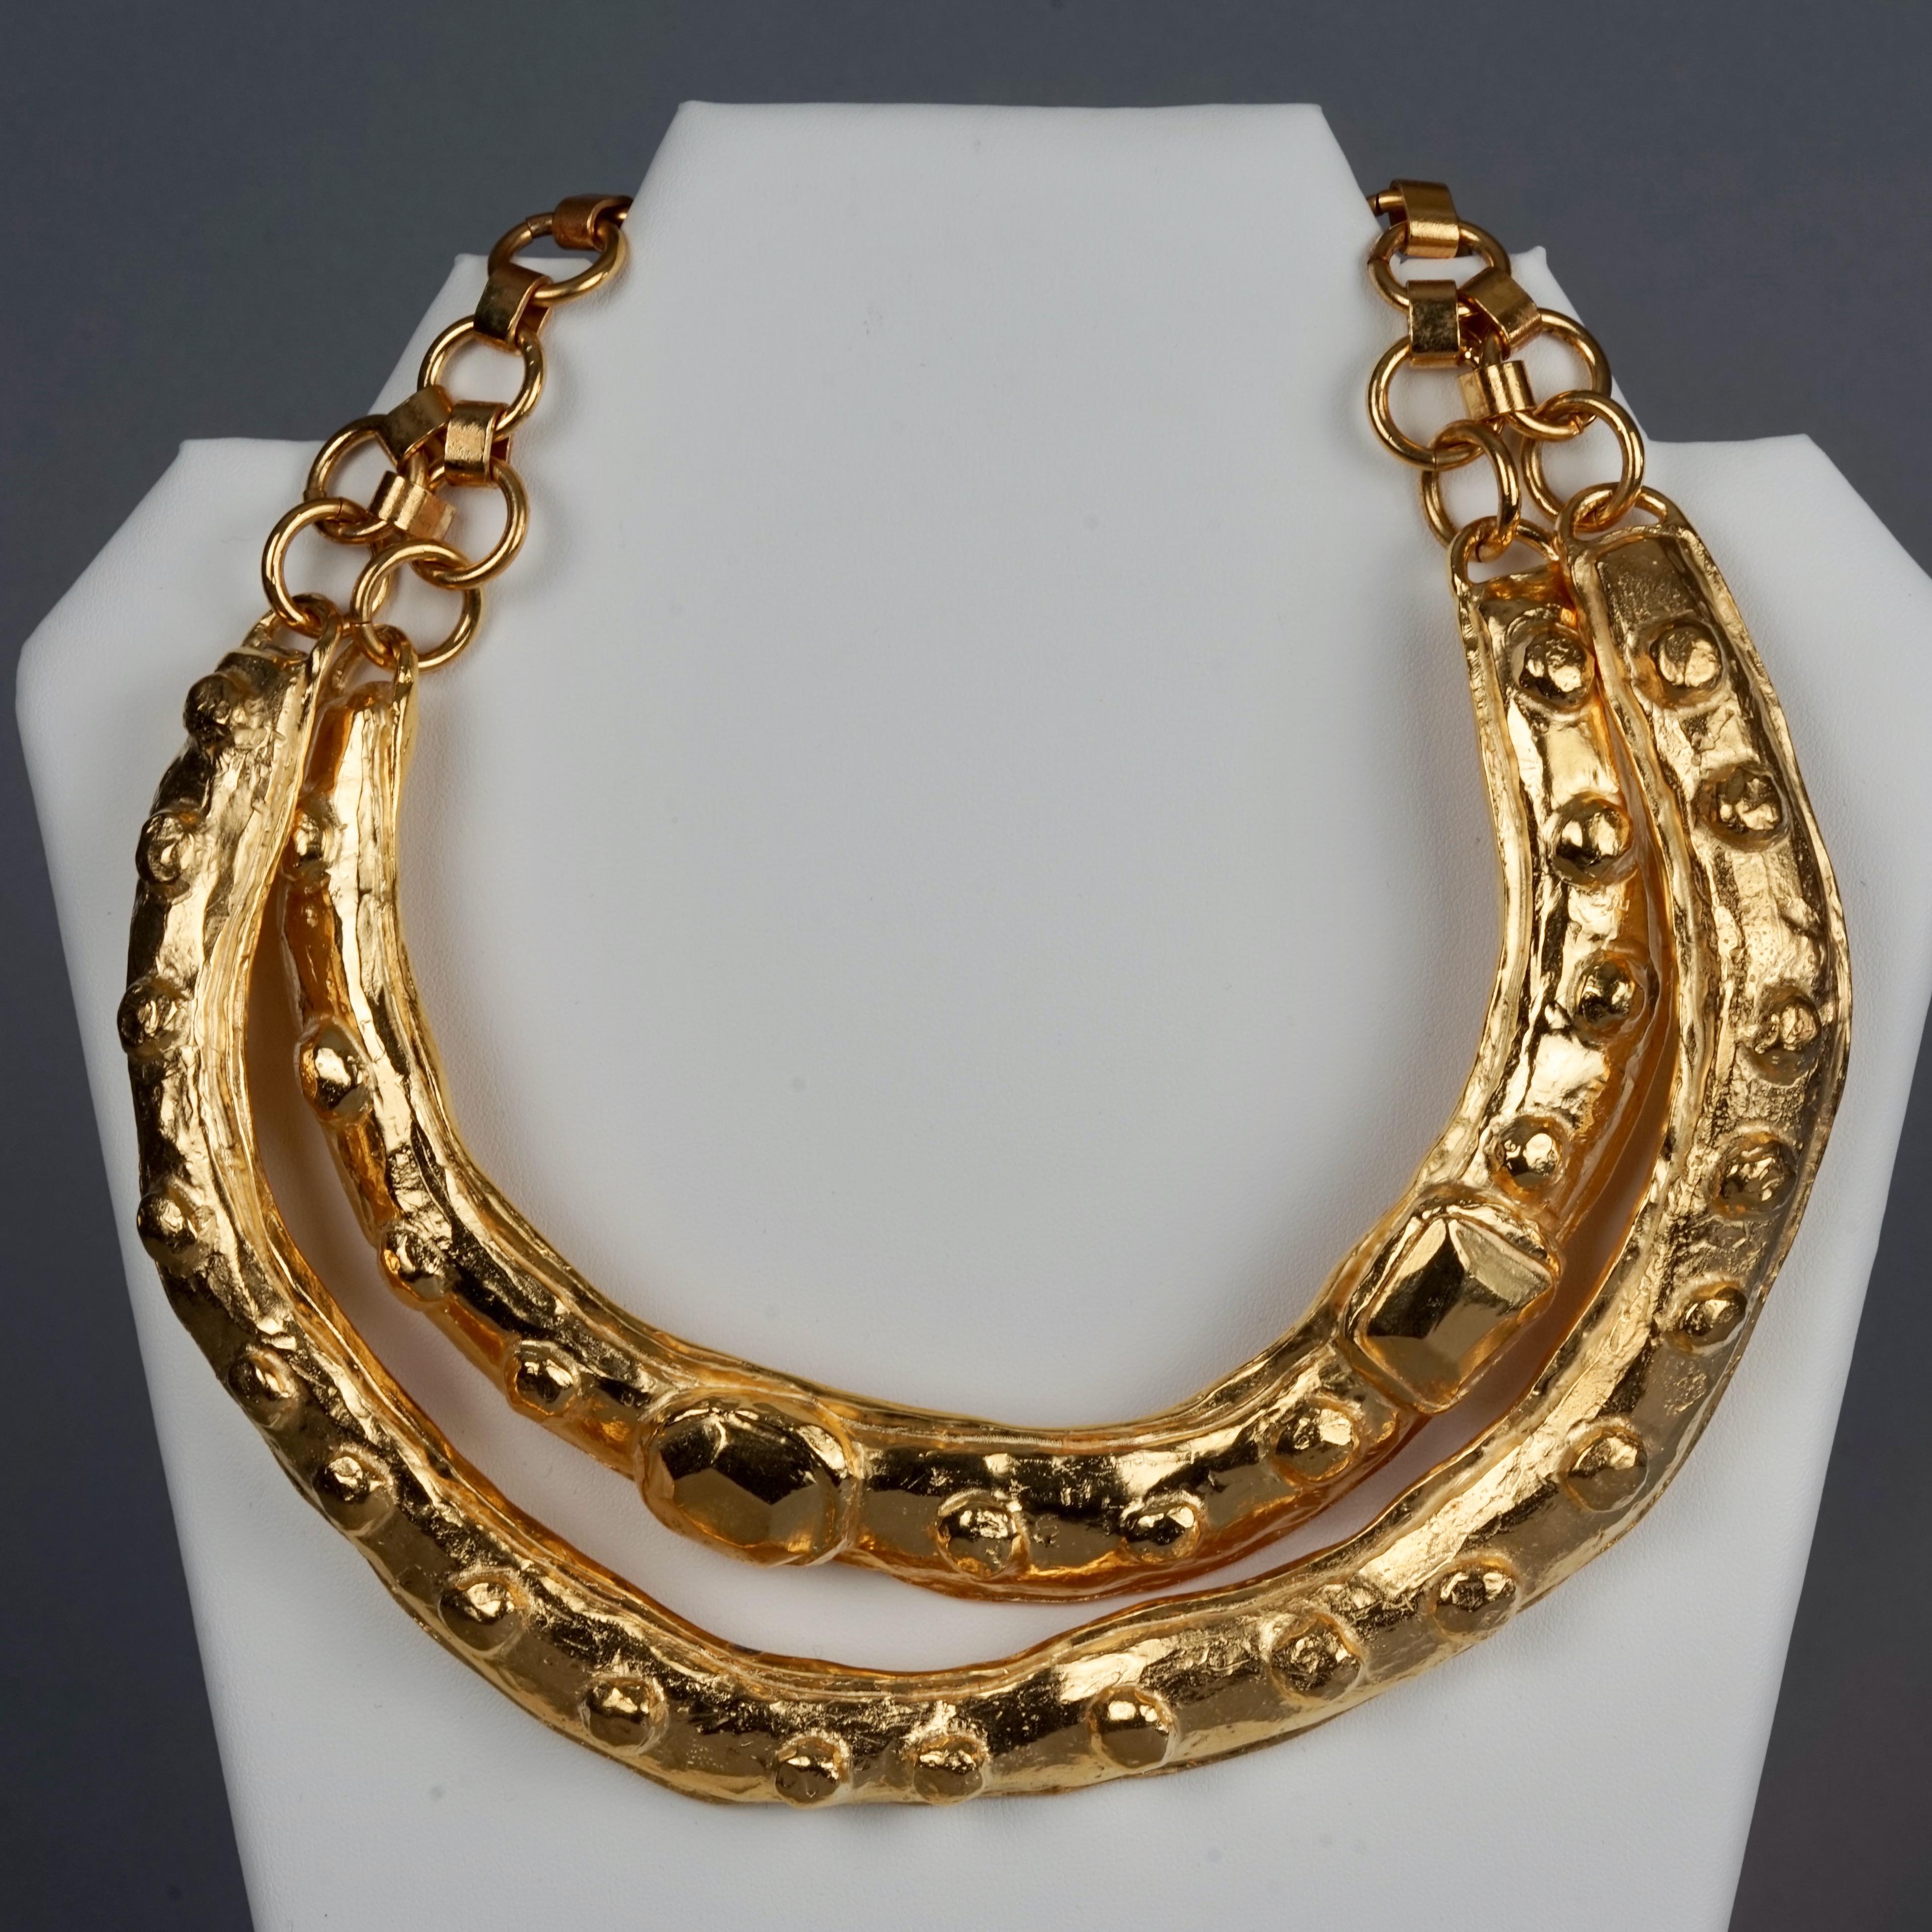 15 cm necklace